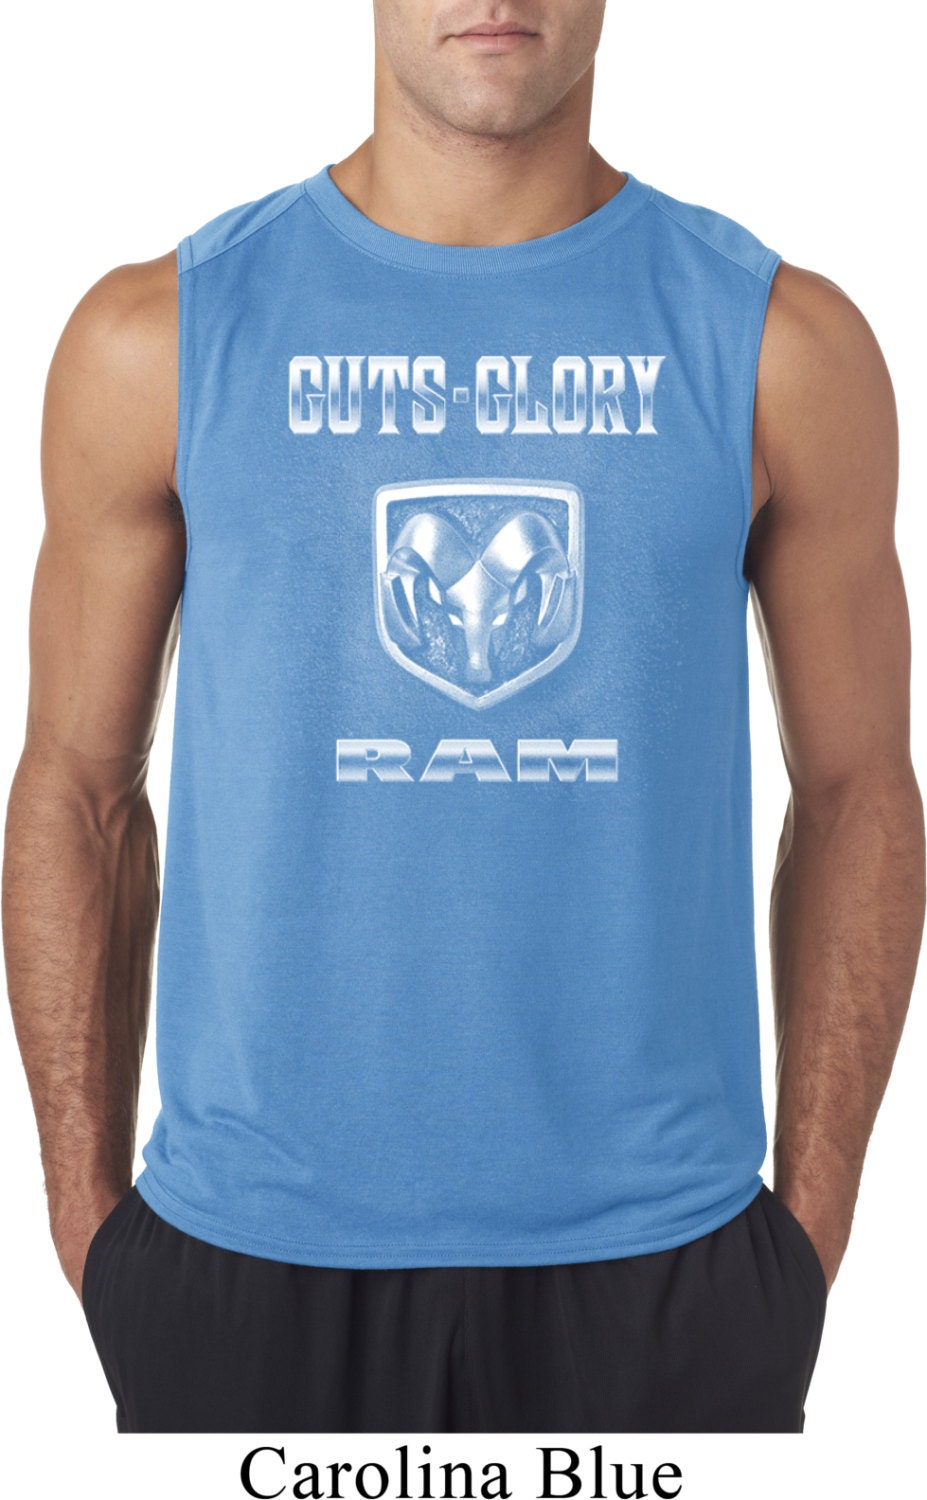 Men's Dodge Guts Glory Ram Logo Sleeveless Tee T-Shirt 20414D2-42700